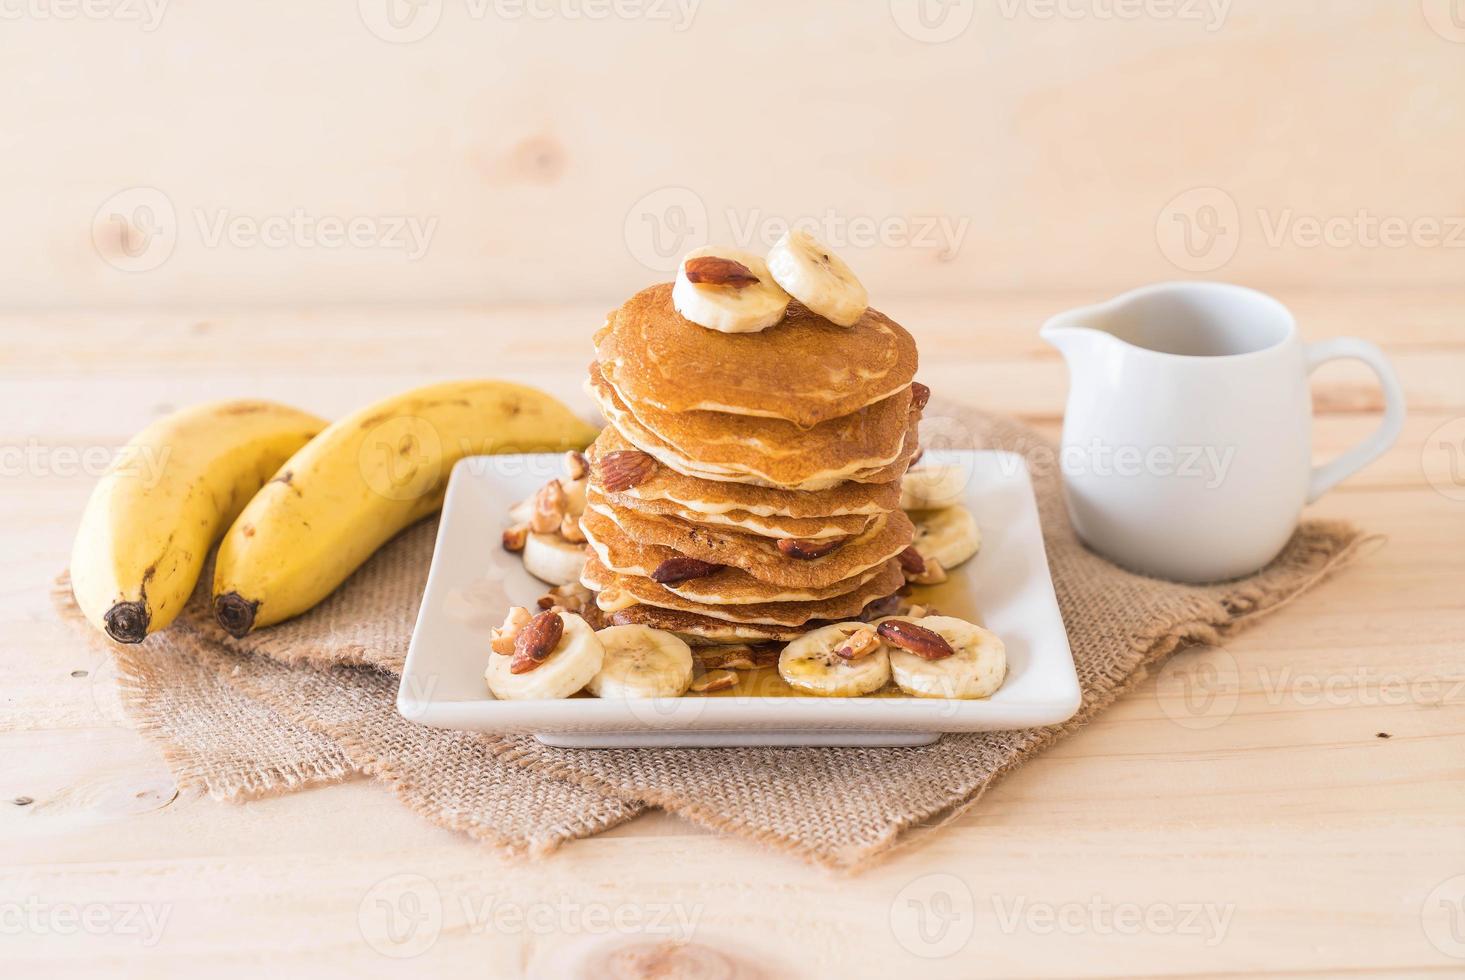 amandel-bananen pannenkoek met honing foto